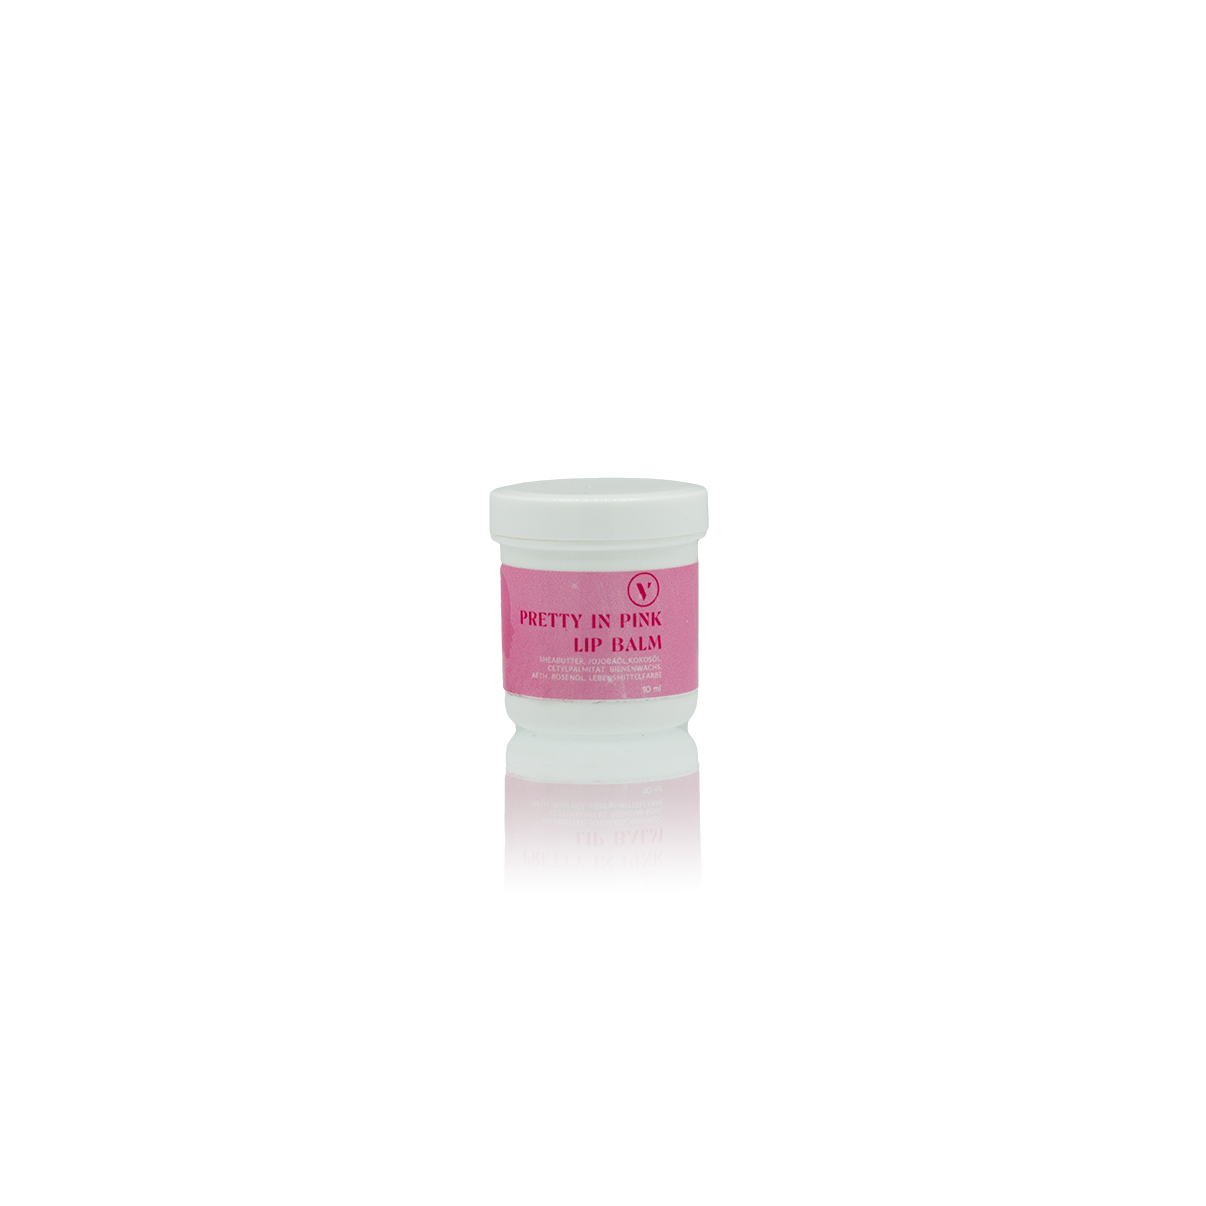 Weiße Plastikverpackung mit rosa Etikett der limited Edition Lippenpflege.